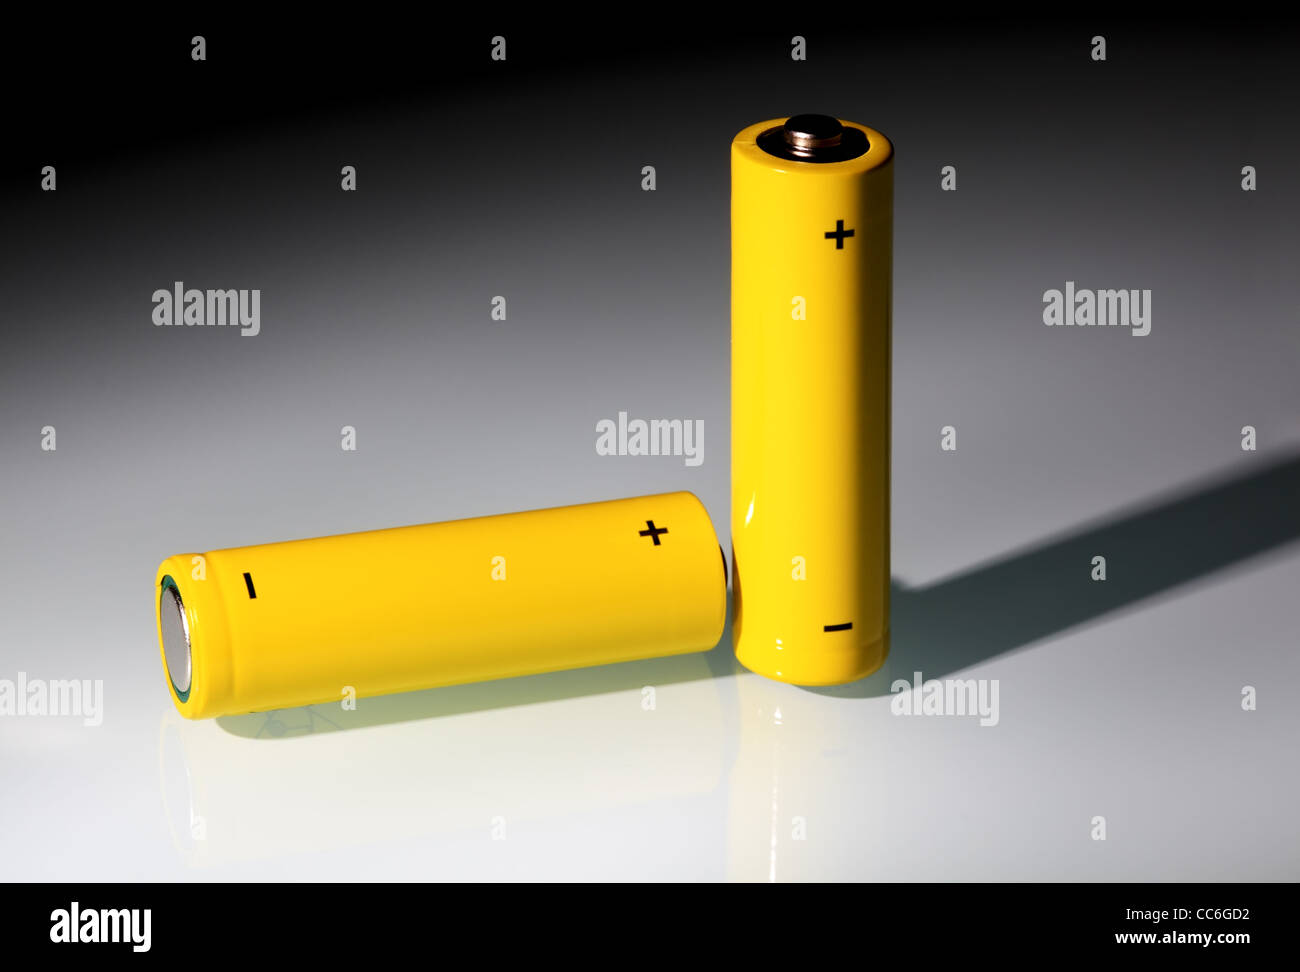 Zwei gelbe AA Batterien in einem Lichtstrahl. Ökologie-Energie-Konzept. Stockfoto